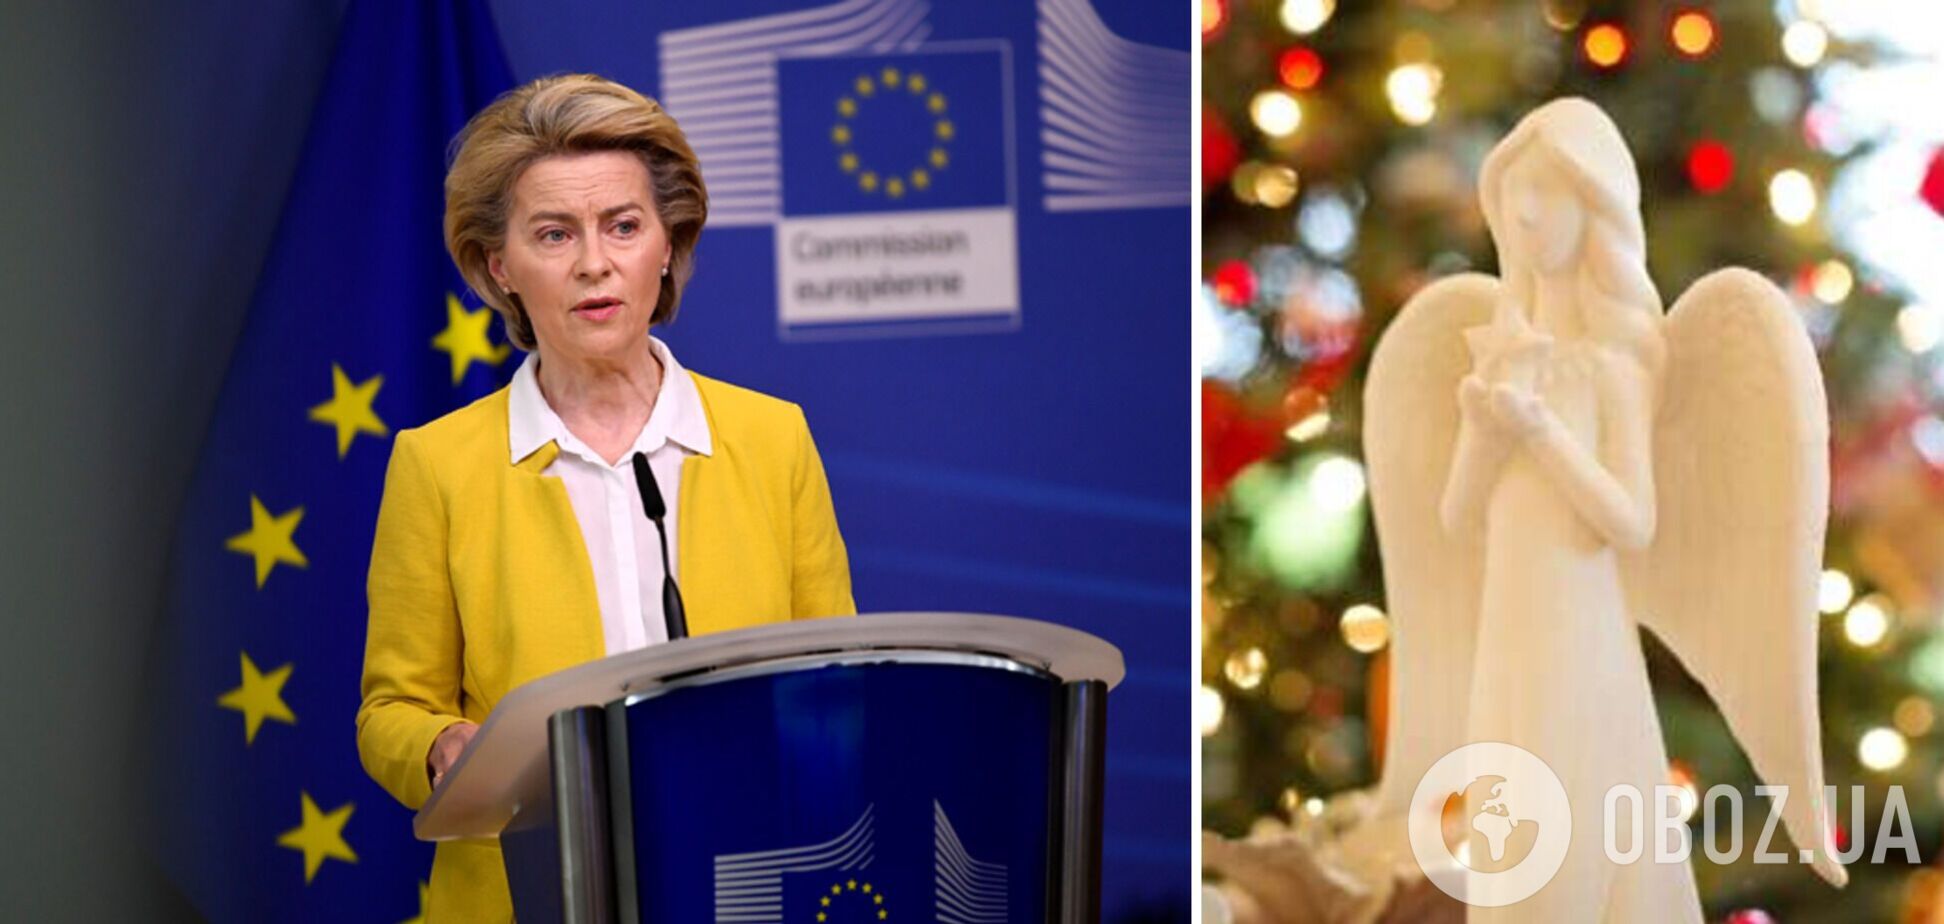 'Знаменательный год!' Урсула фон дер Ляен отметила солидарность с Украиной в своем обращении к Европе